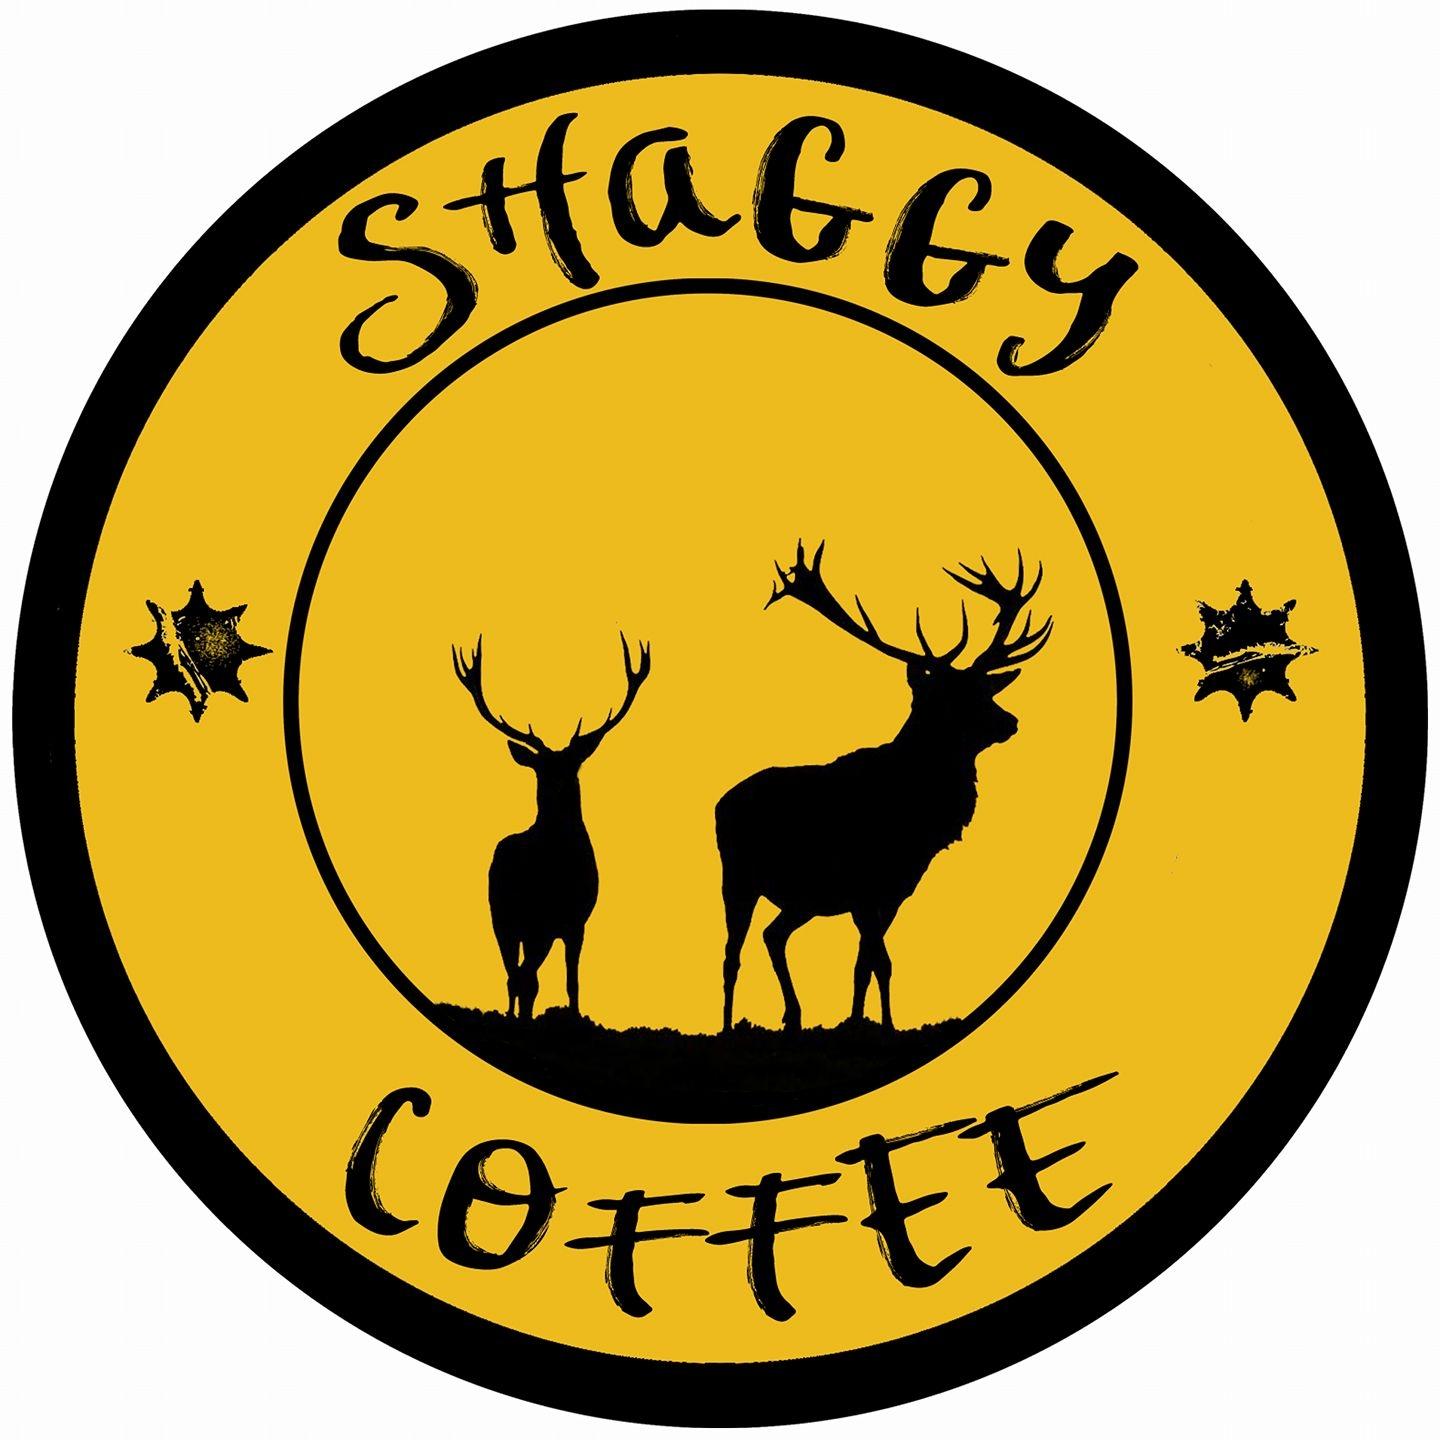 Shaggy Coffee logo